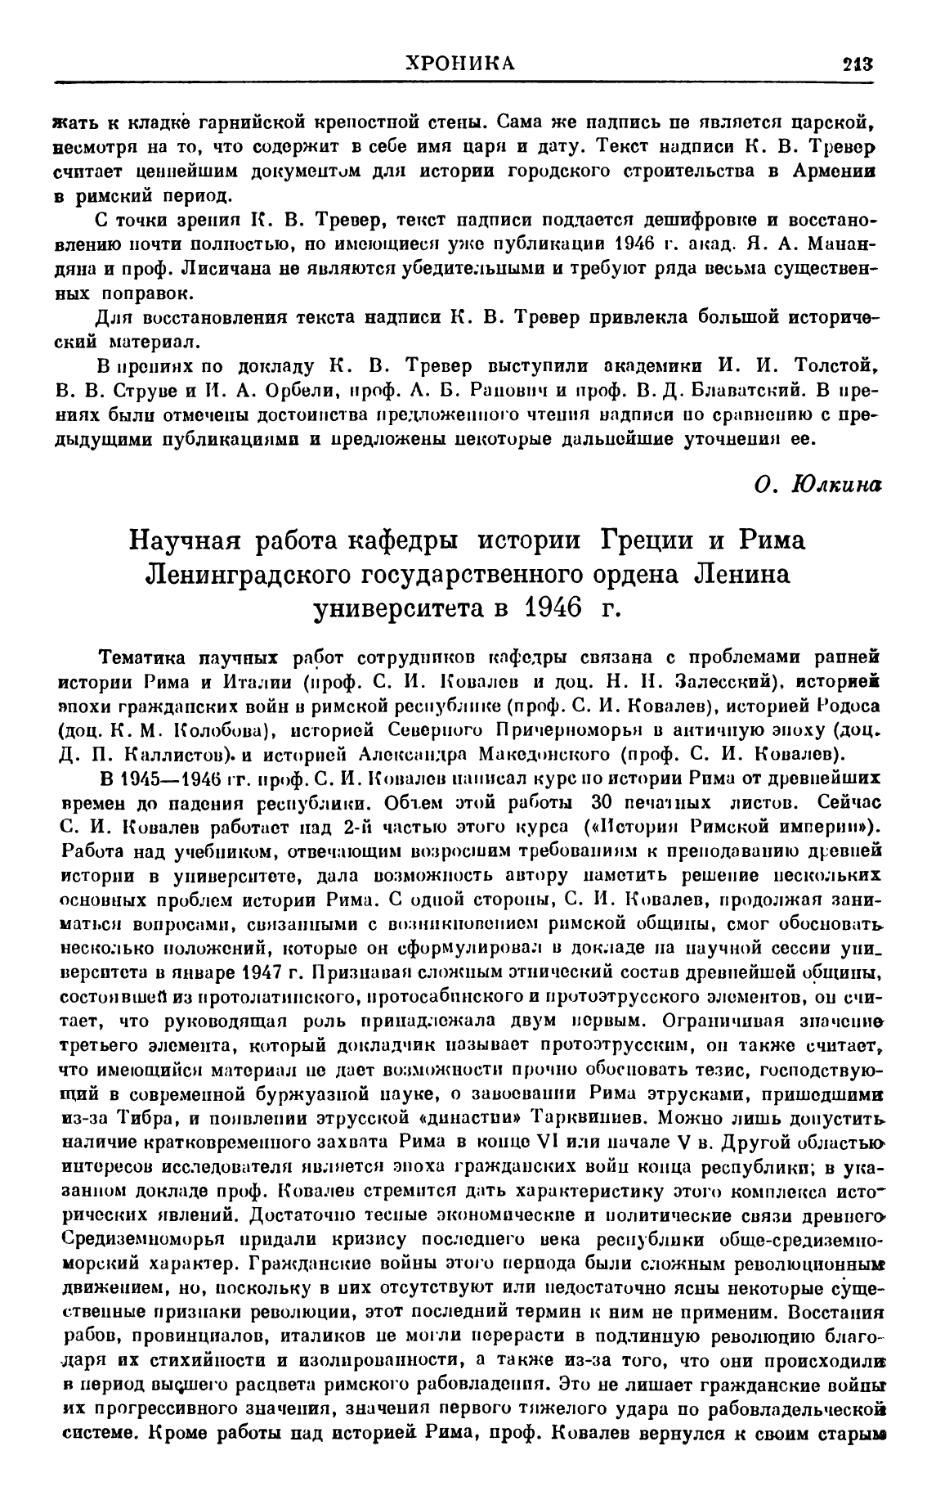 Н. Залесский, Научная работа кафедры истории Греции и Рима ЛГУ в 1946 г